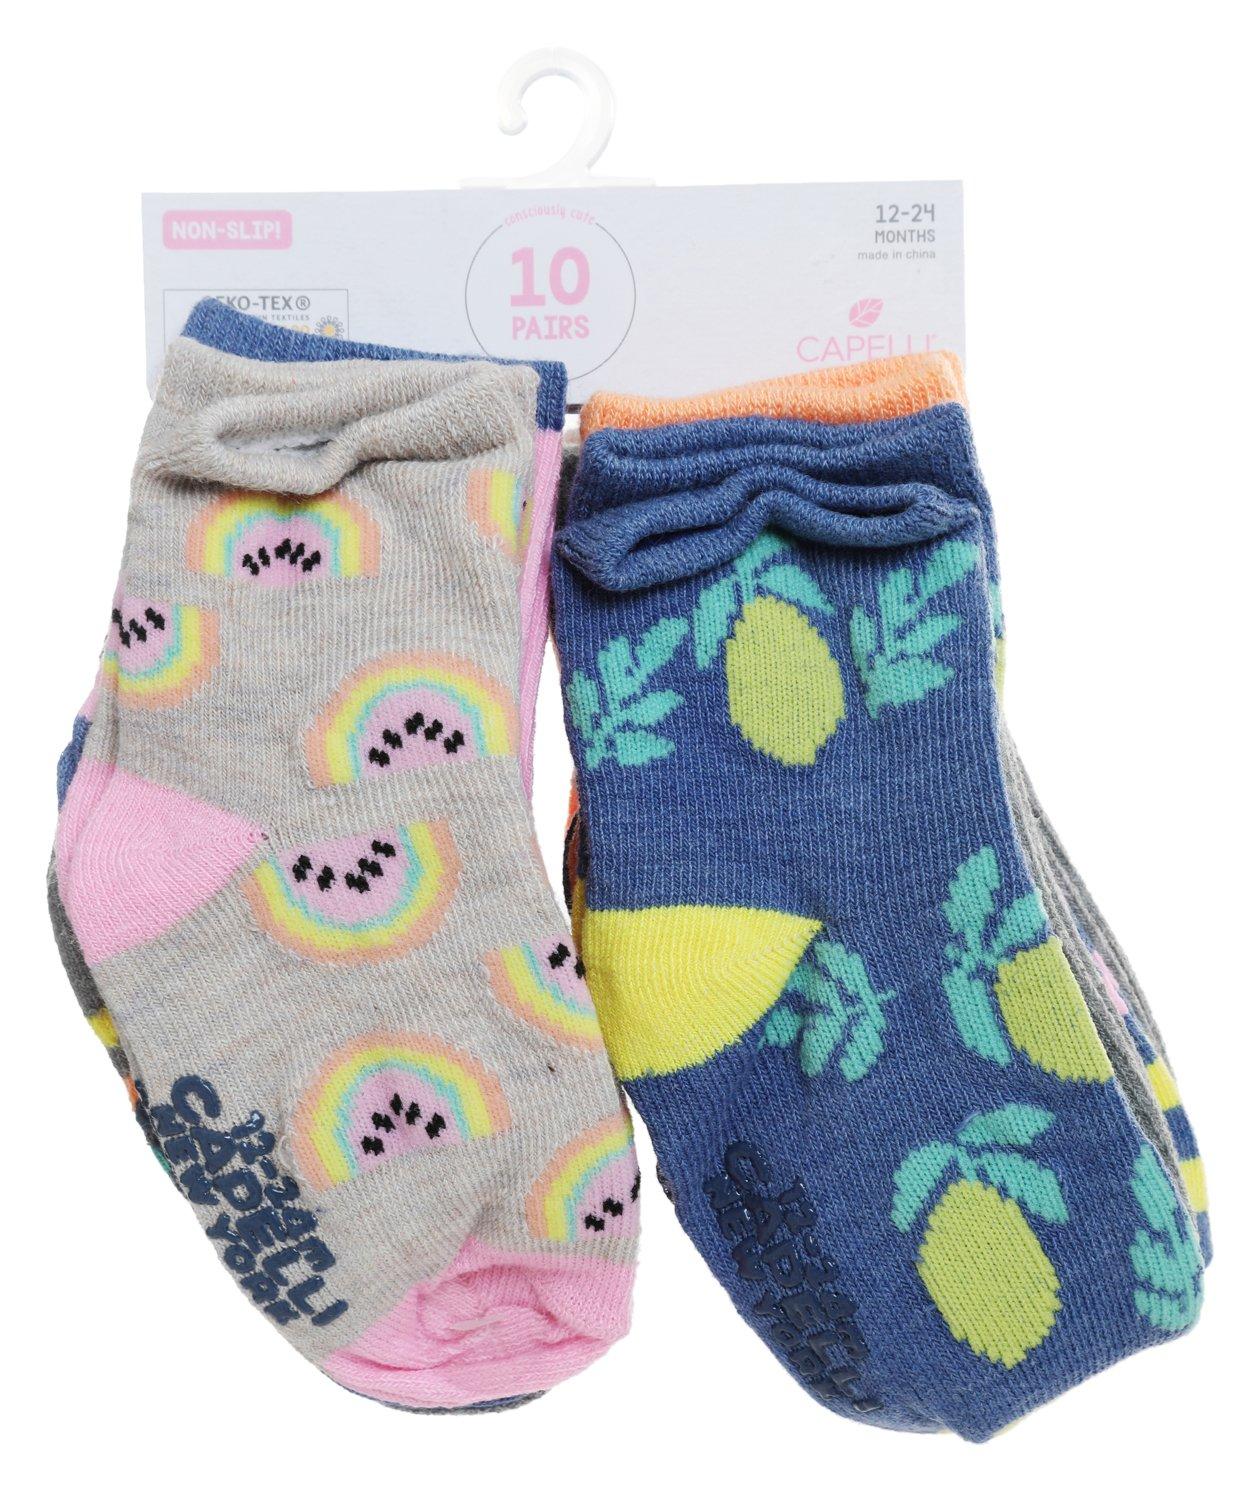 Baby Girls 10 Pk Socks